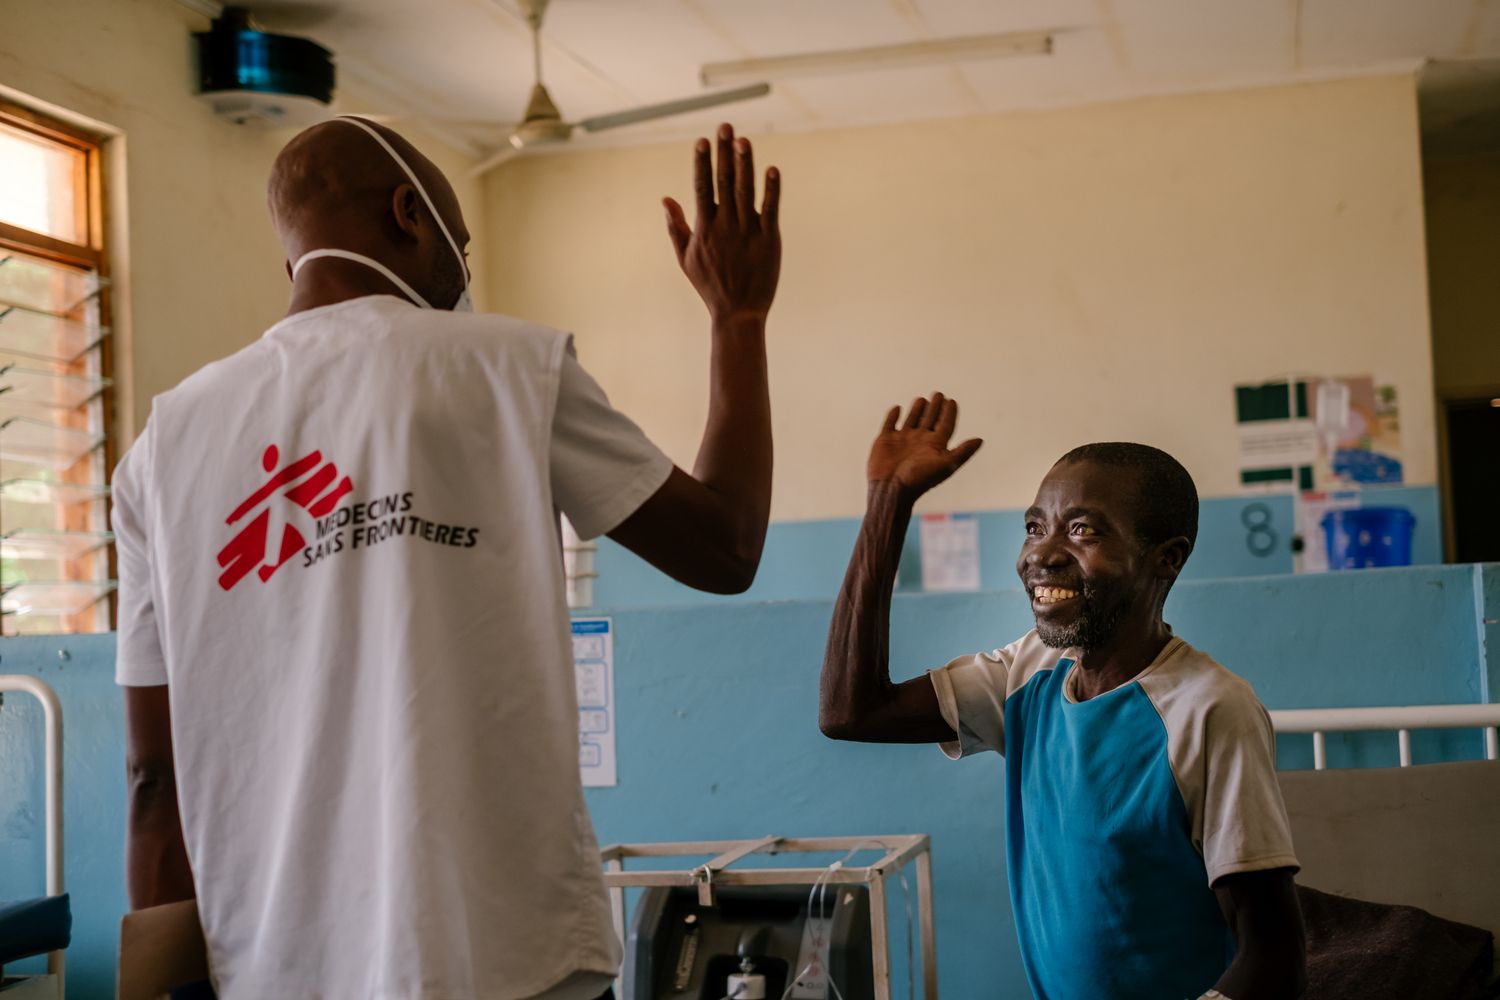 Médecins Sans Frontières/Doctors Without Borders (MSF)